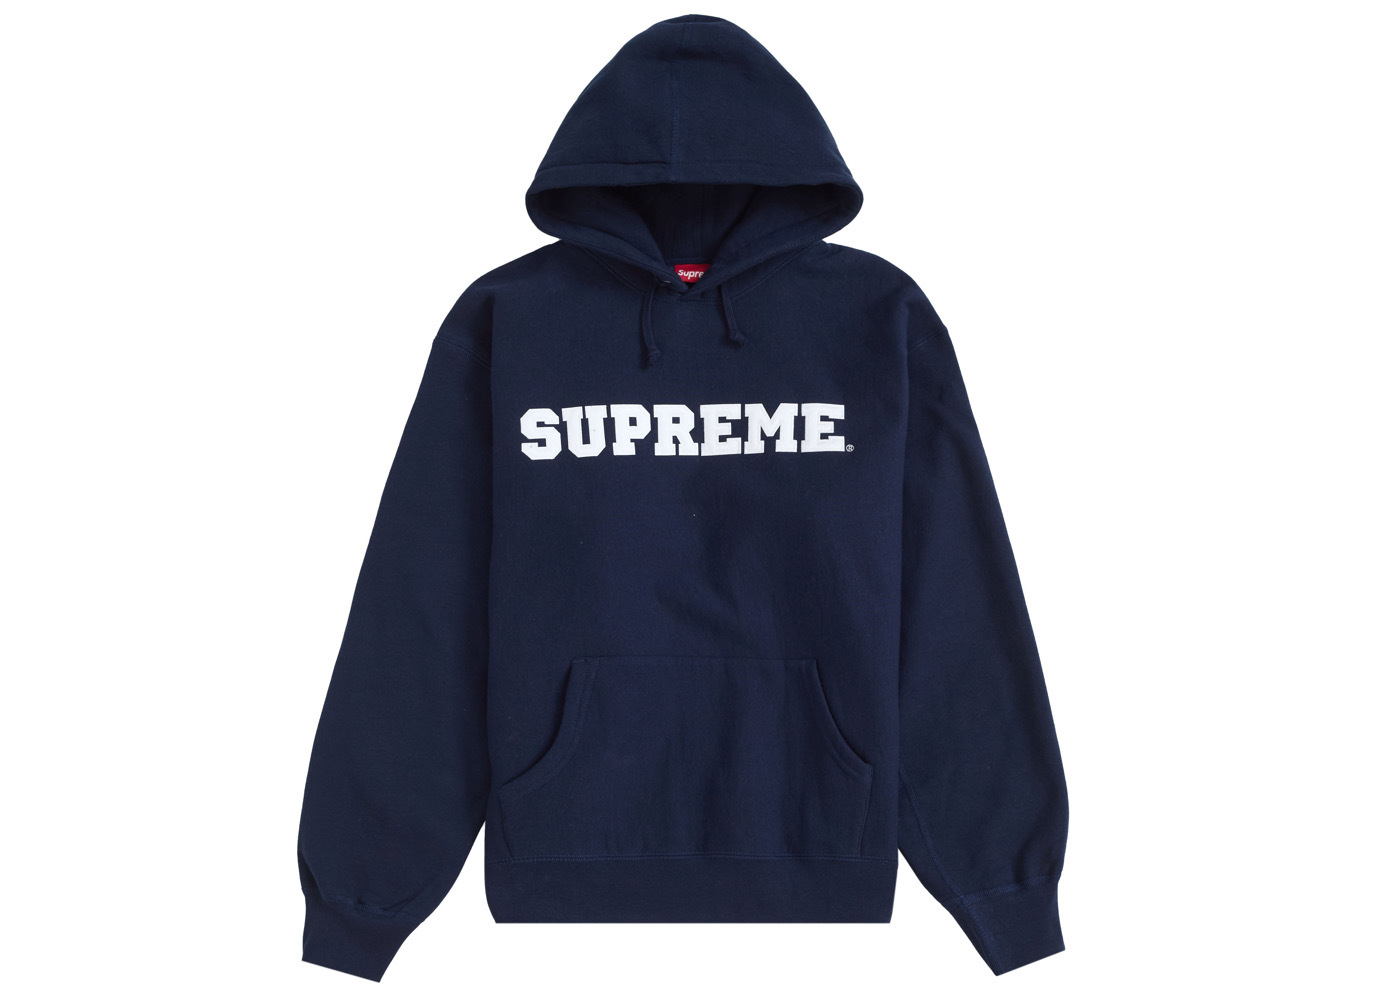 14,395円Supreme Collegiate Hooded Sweatshirt